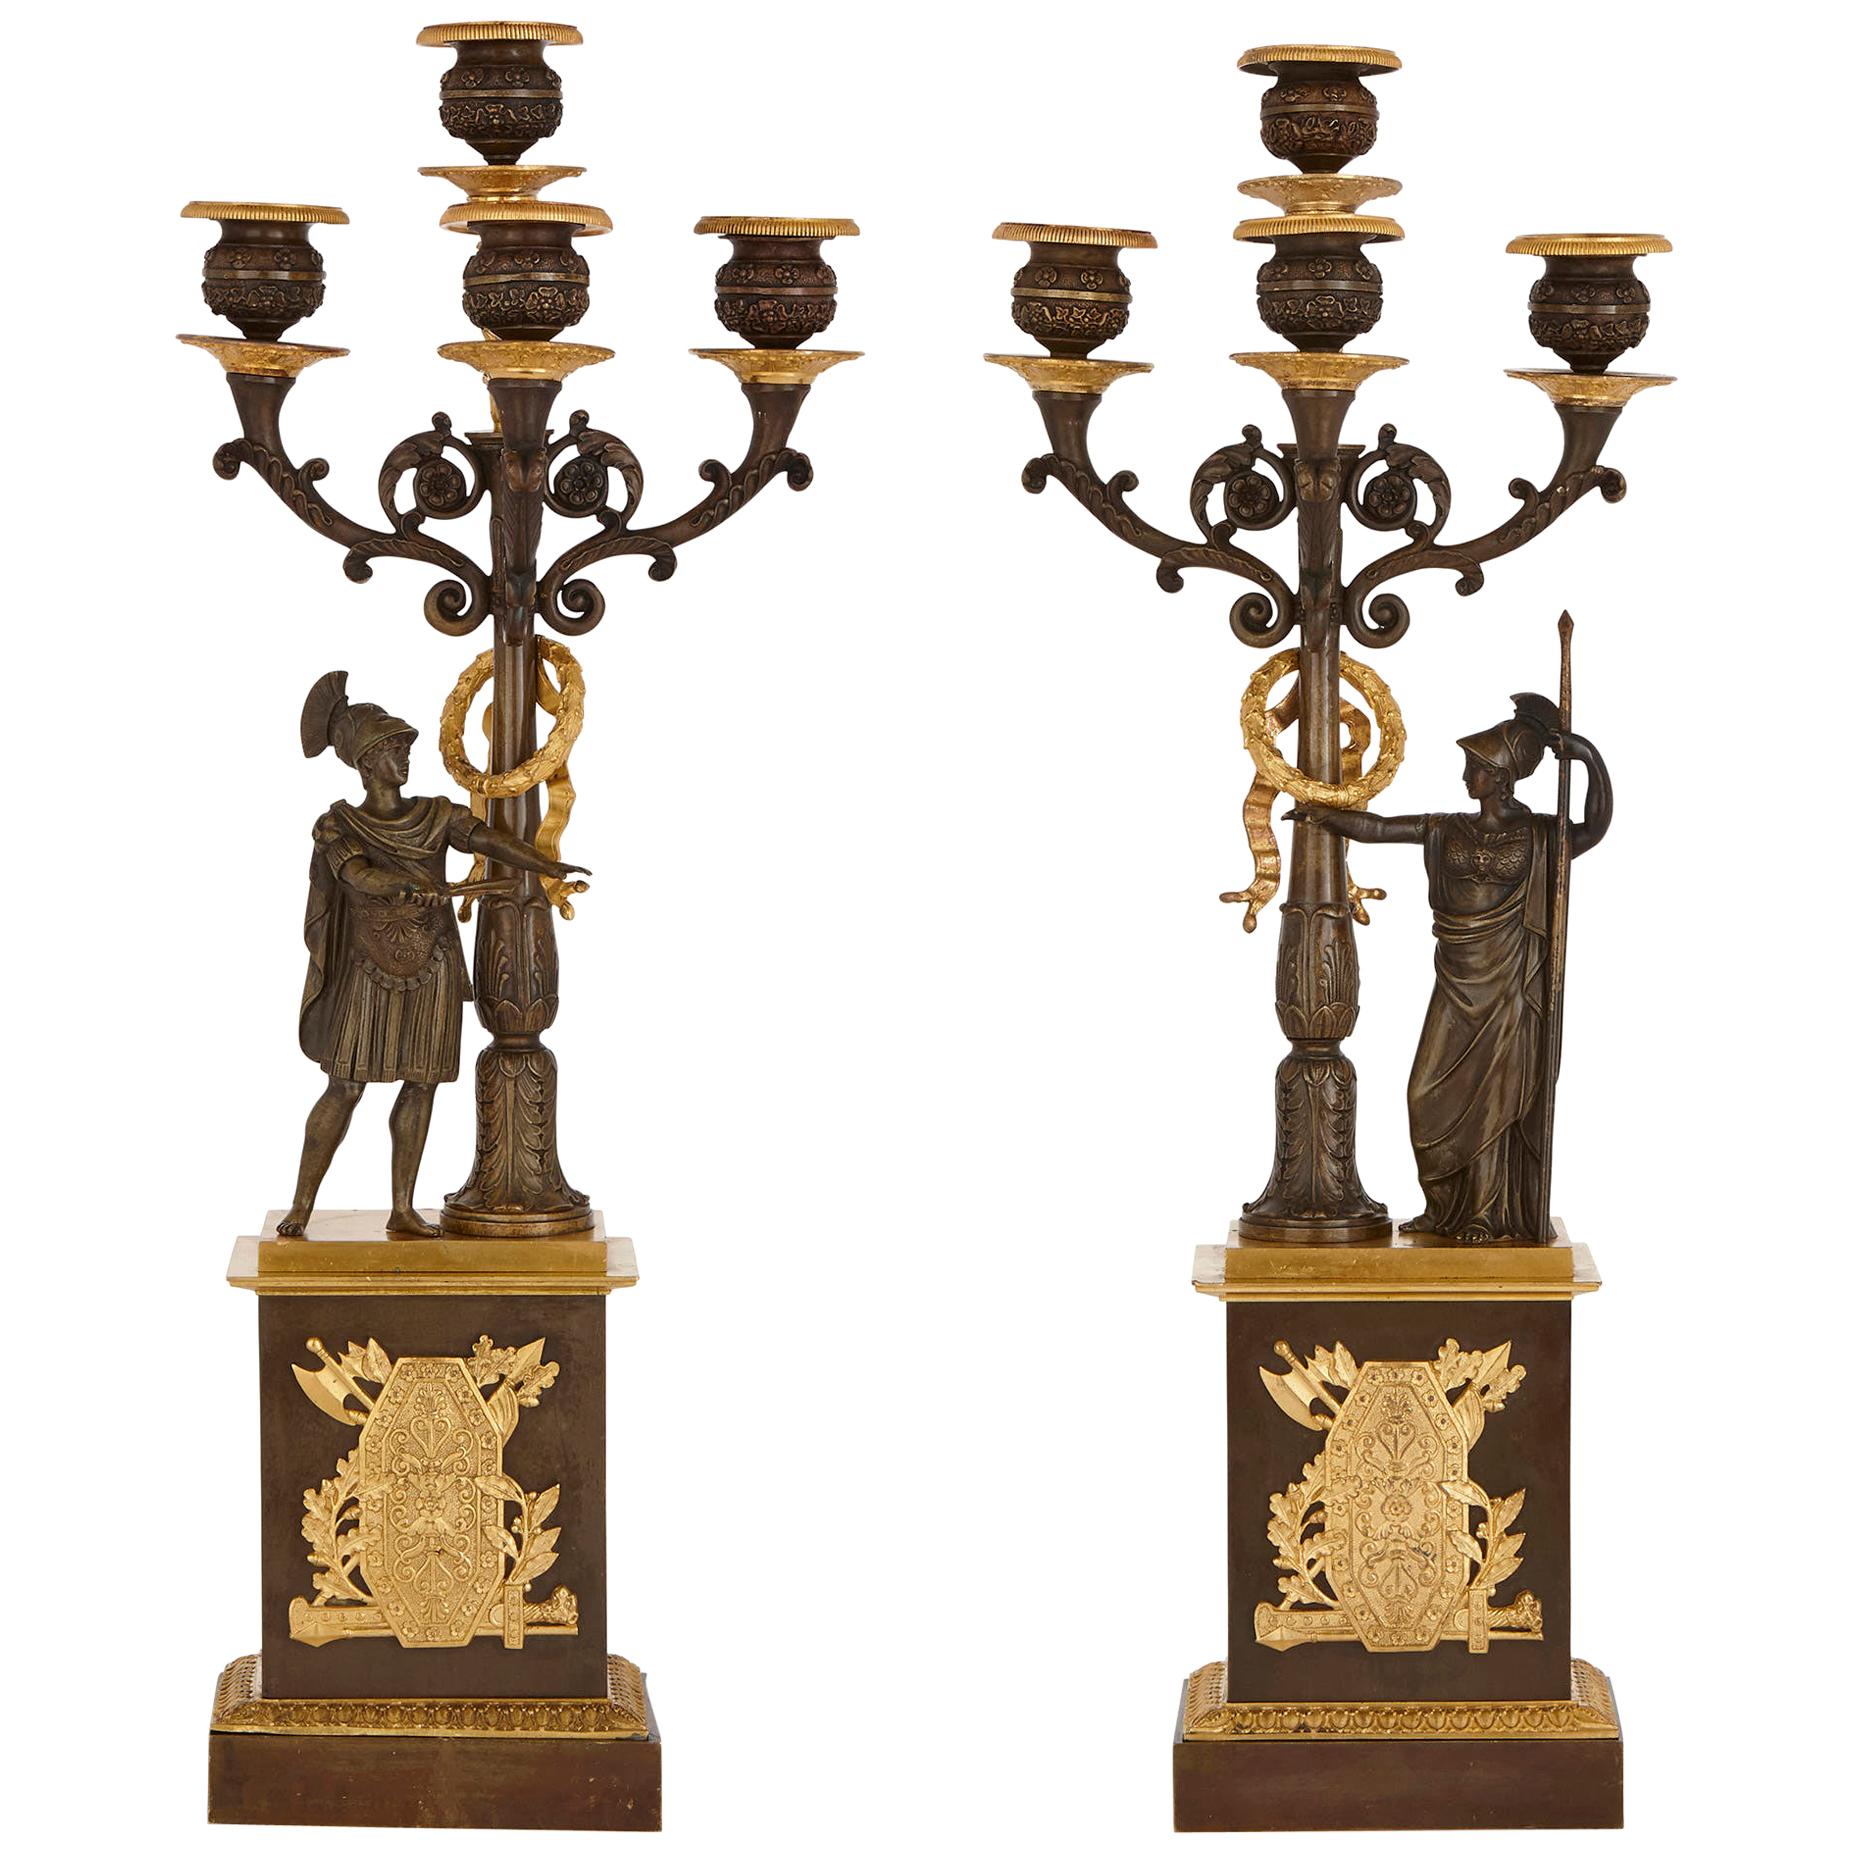 Kandelaber aus vergoldeter und patinierter Bronze im Empire-Stil